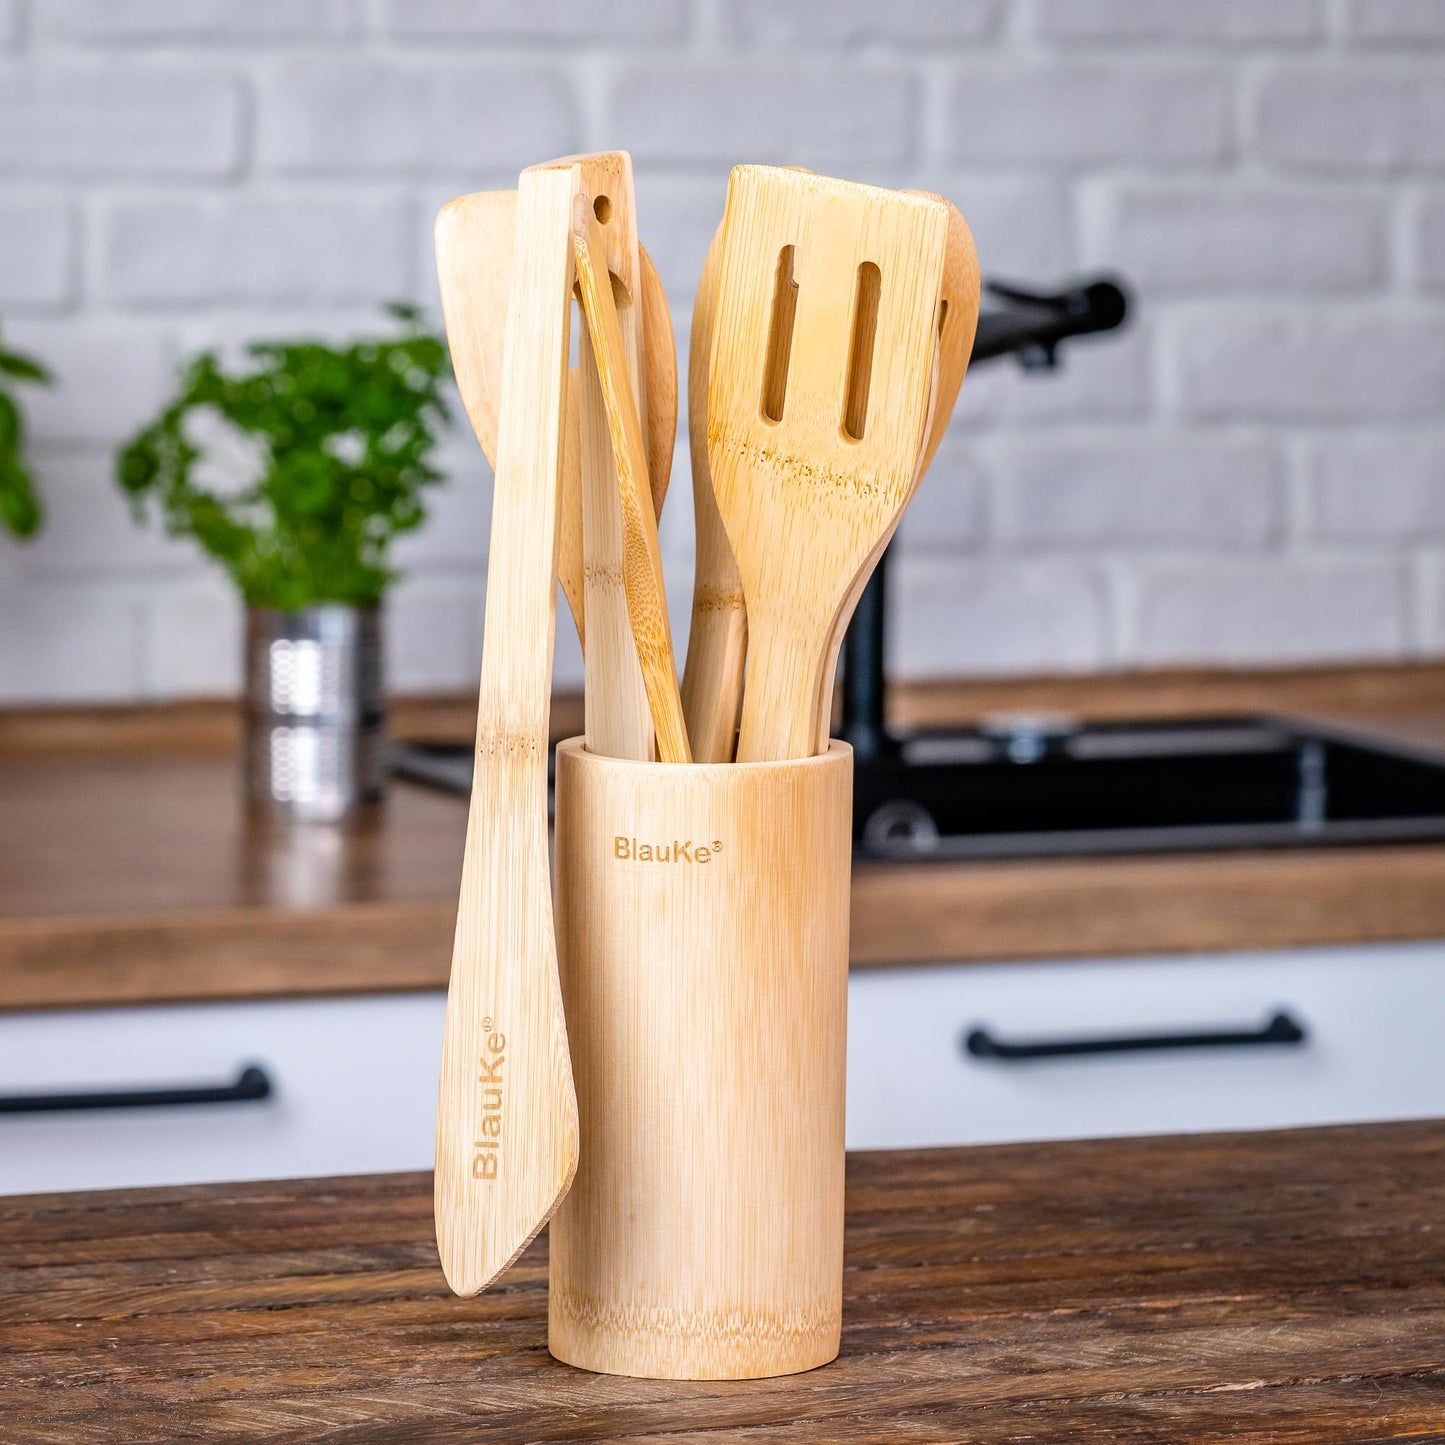 Bamboo Kitchen Utensils Set 8-Pack - Wooden Cooking Utensils for Nonstick Cookware - Wooden Cooking Spoons, Spatulas, Turner, Tongs, Utensil Holder-7